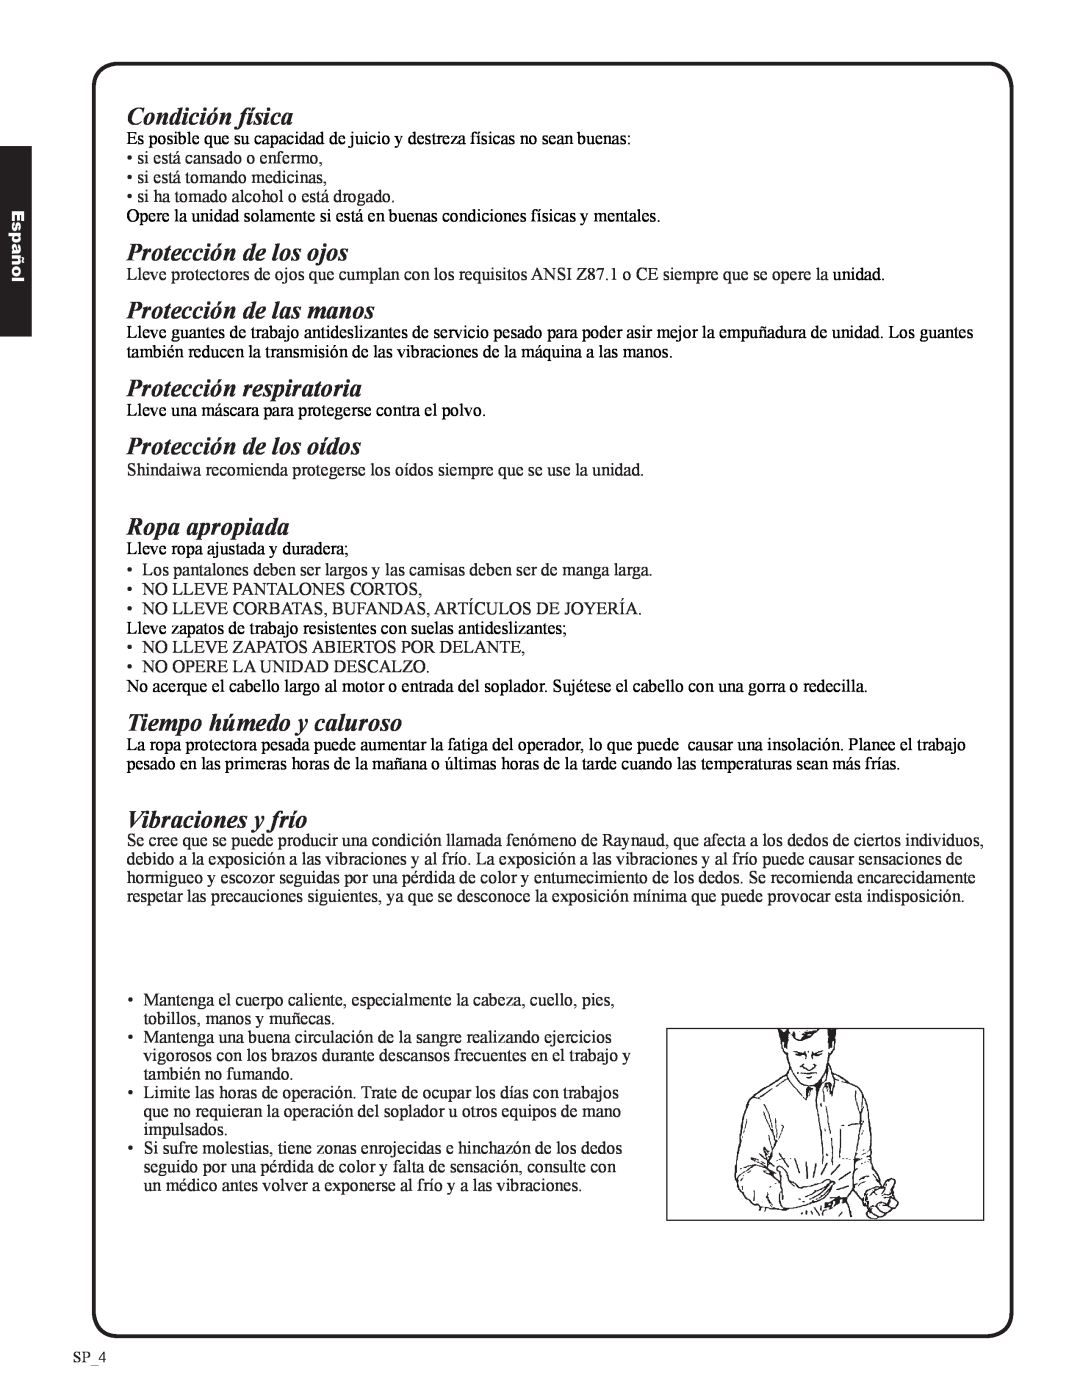 Shindaiwa EB633RT Condición física, Protección de los ojos, Protección de las manos, Protección respiratoria, Español 